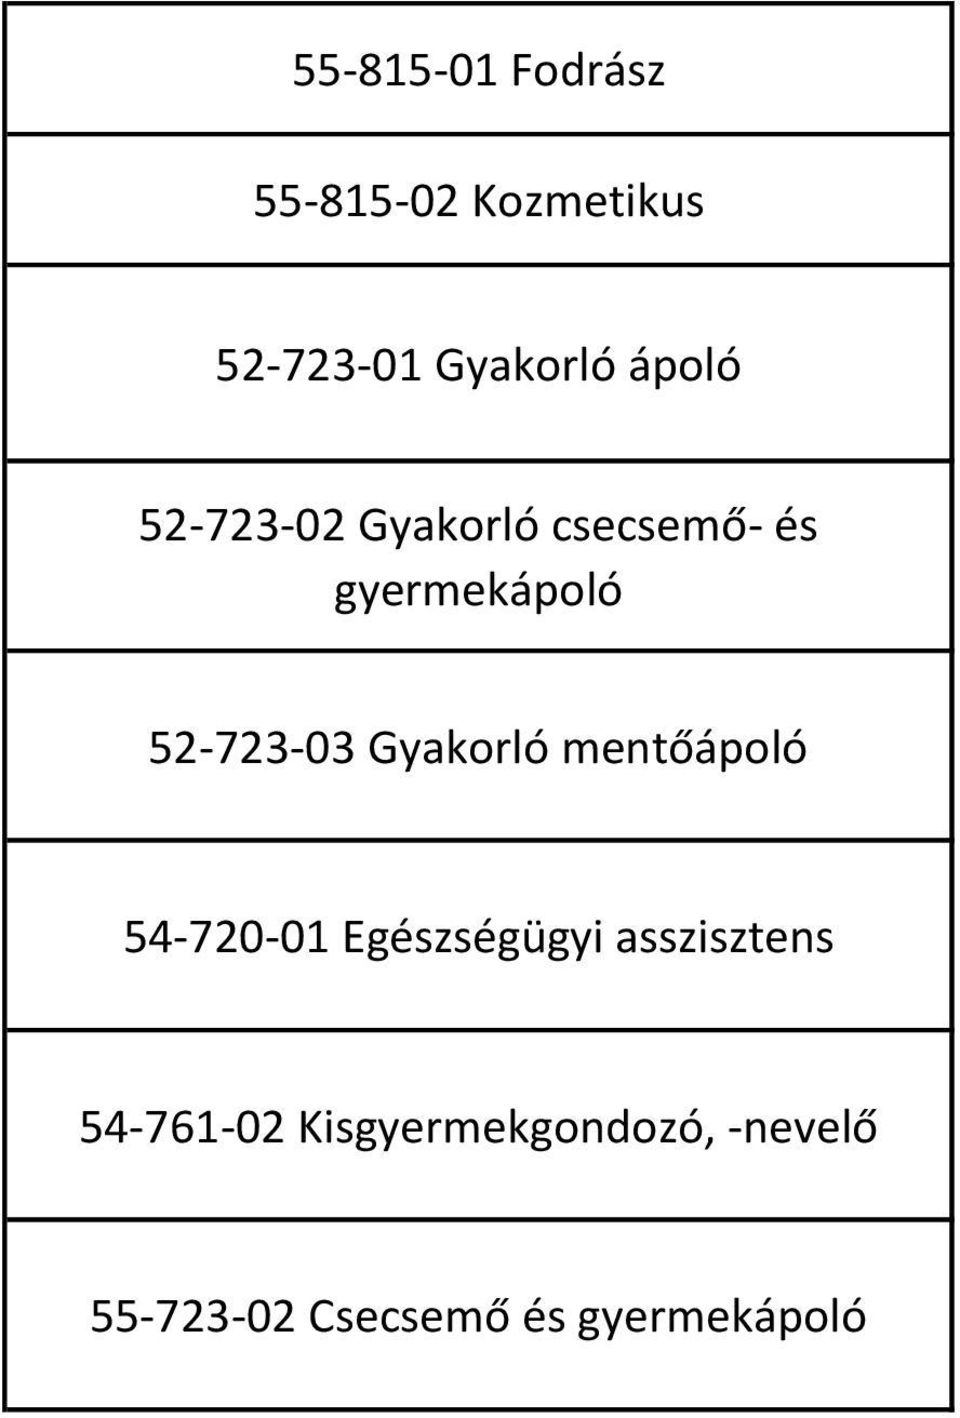 Gyakorló mentőápoló 54-720-01 Egészségügyi asszisztens